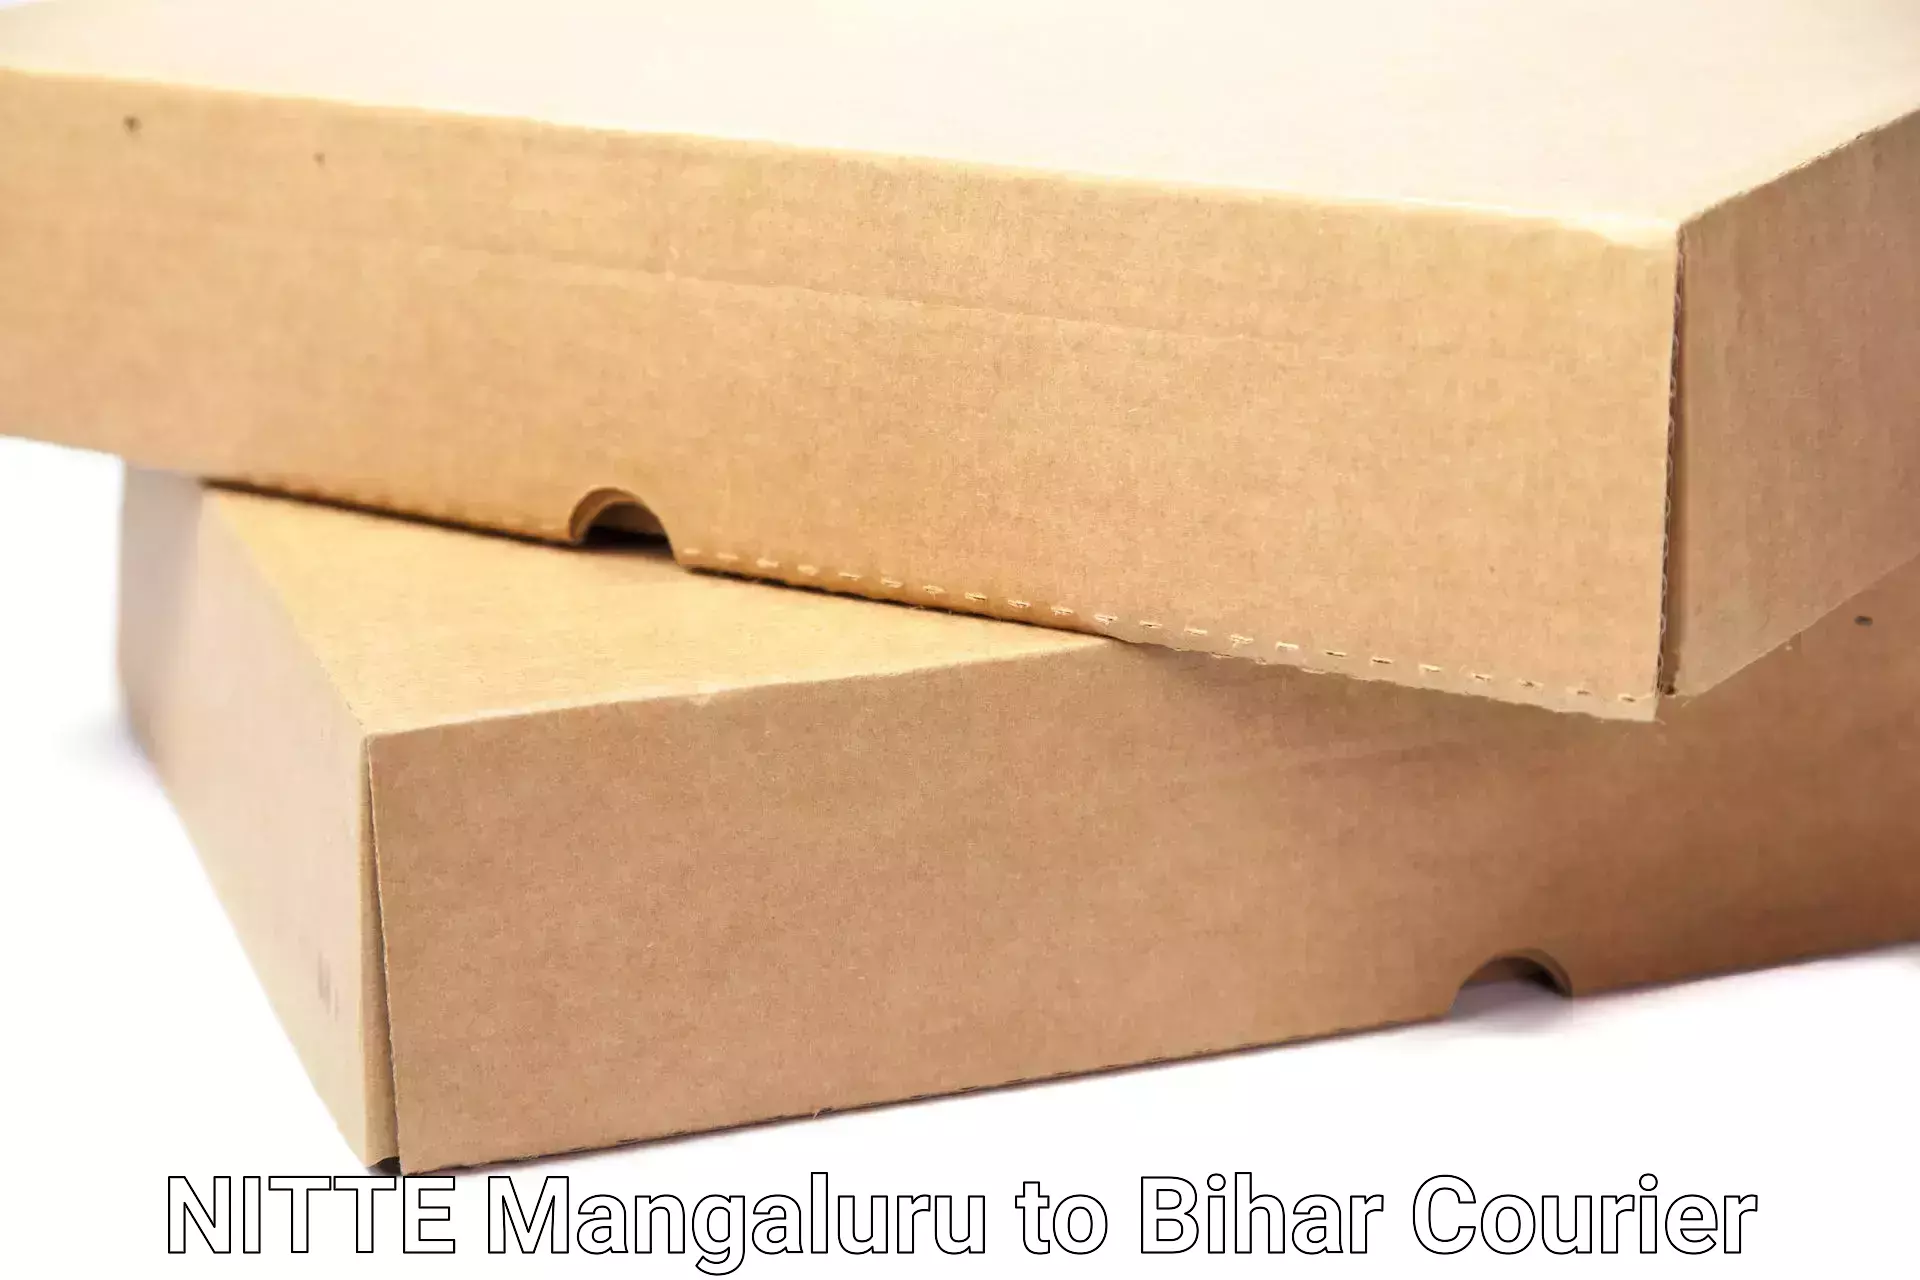 Professional movers NITTE Mangaluru to Kalyanpur Samastipur